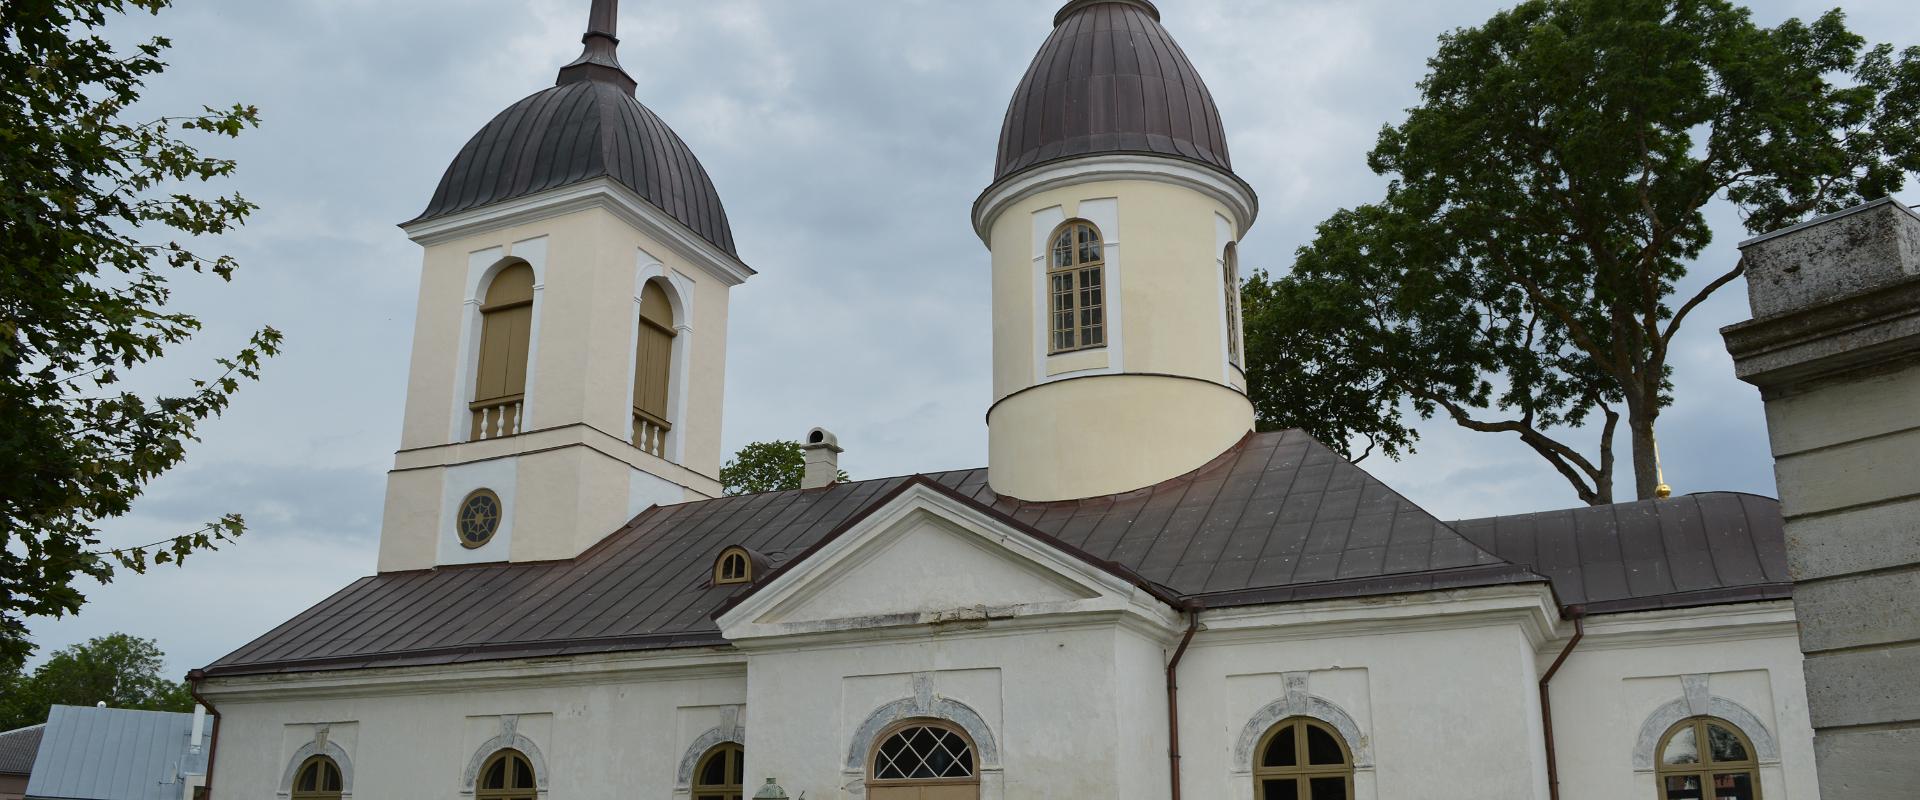 Kuressaare Püha Nikolai kirik (St. Nikolaikirche von Kuressaare)